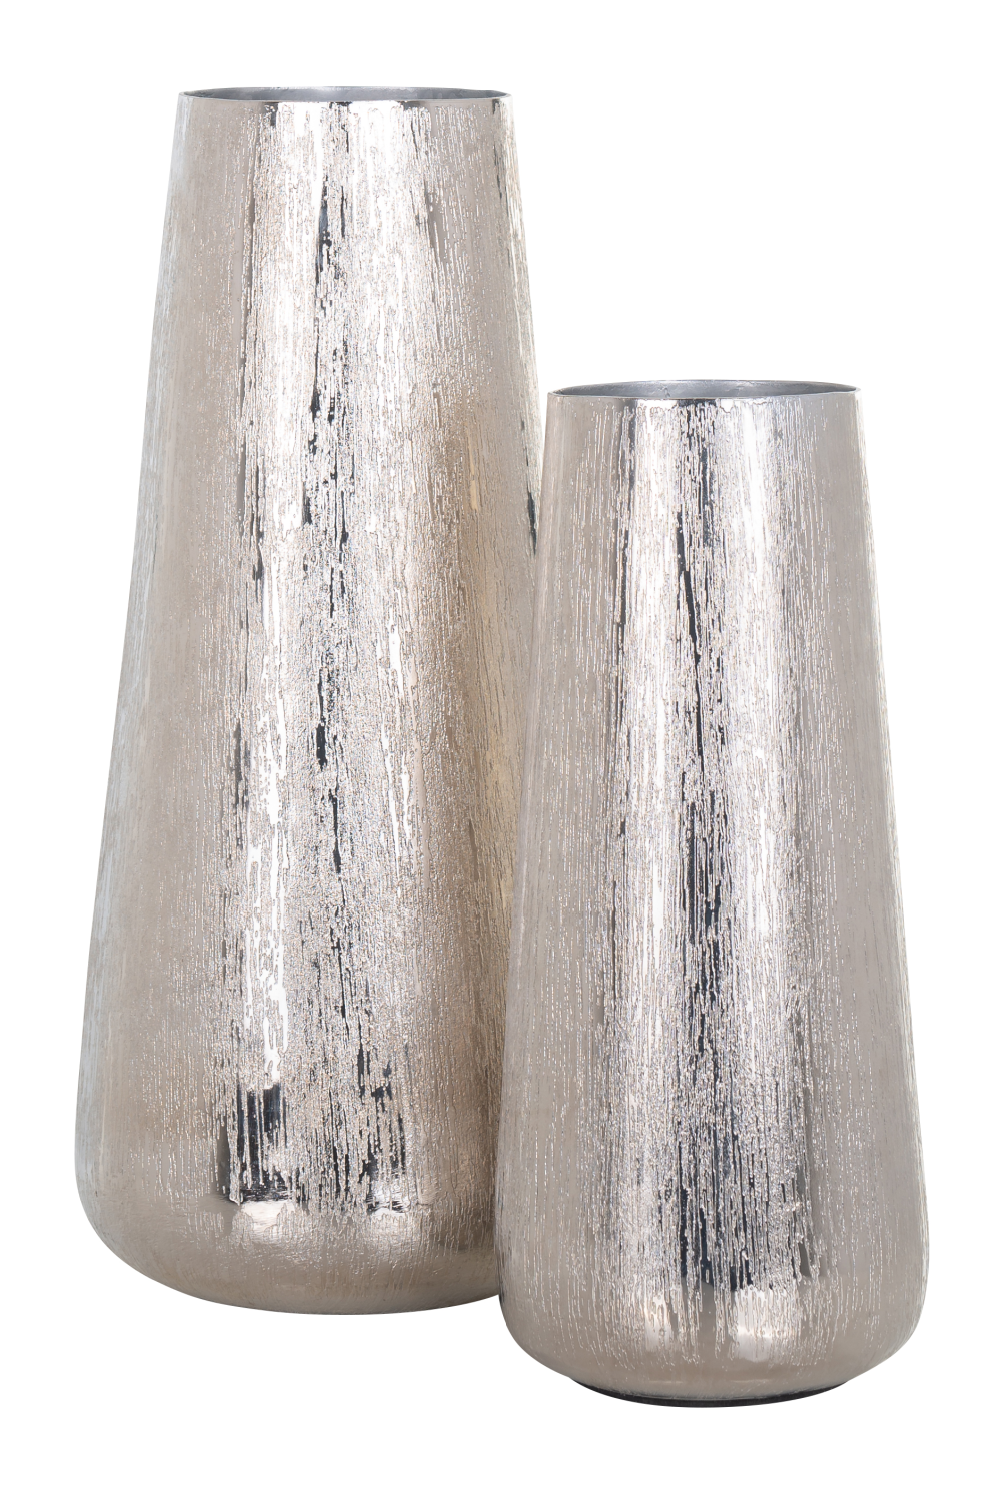 Rustic Silver Vase | OROA Jelte | Oroa.com